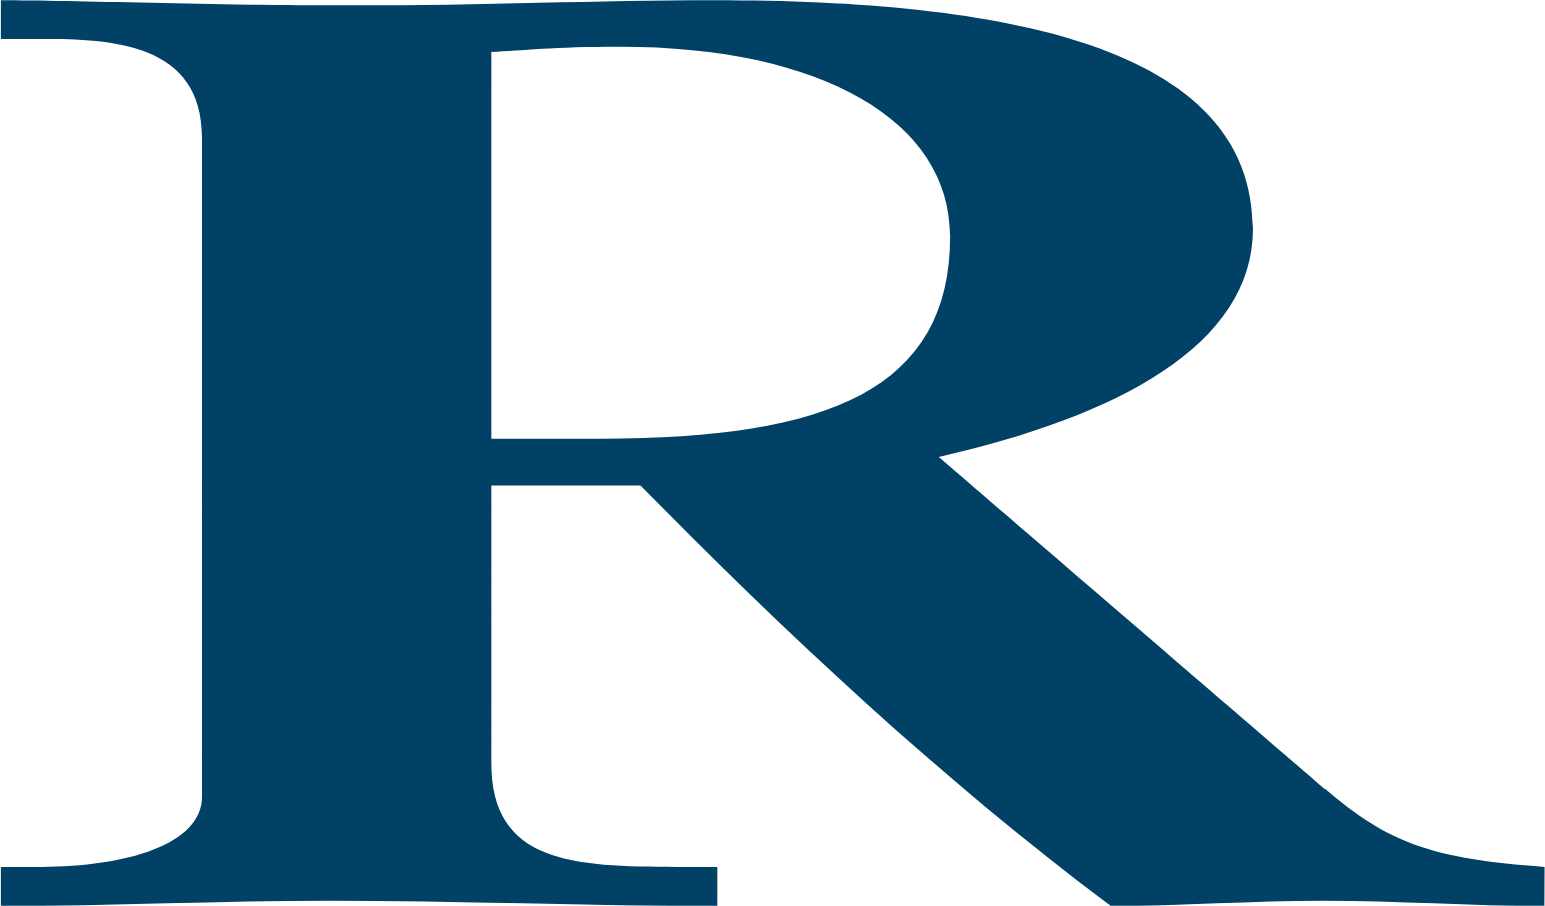 Compagnie Financière Richemont logo (transparent PNG)